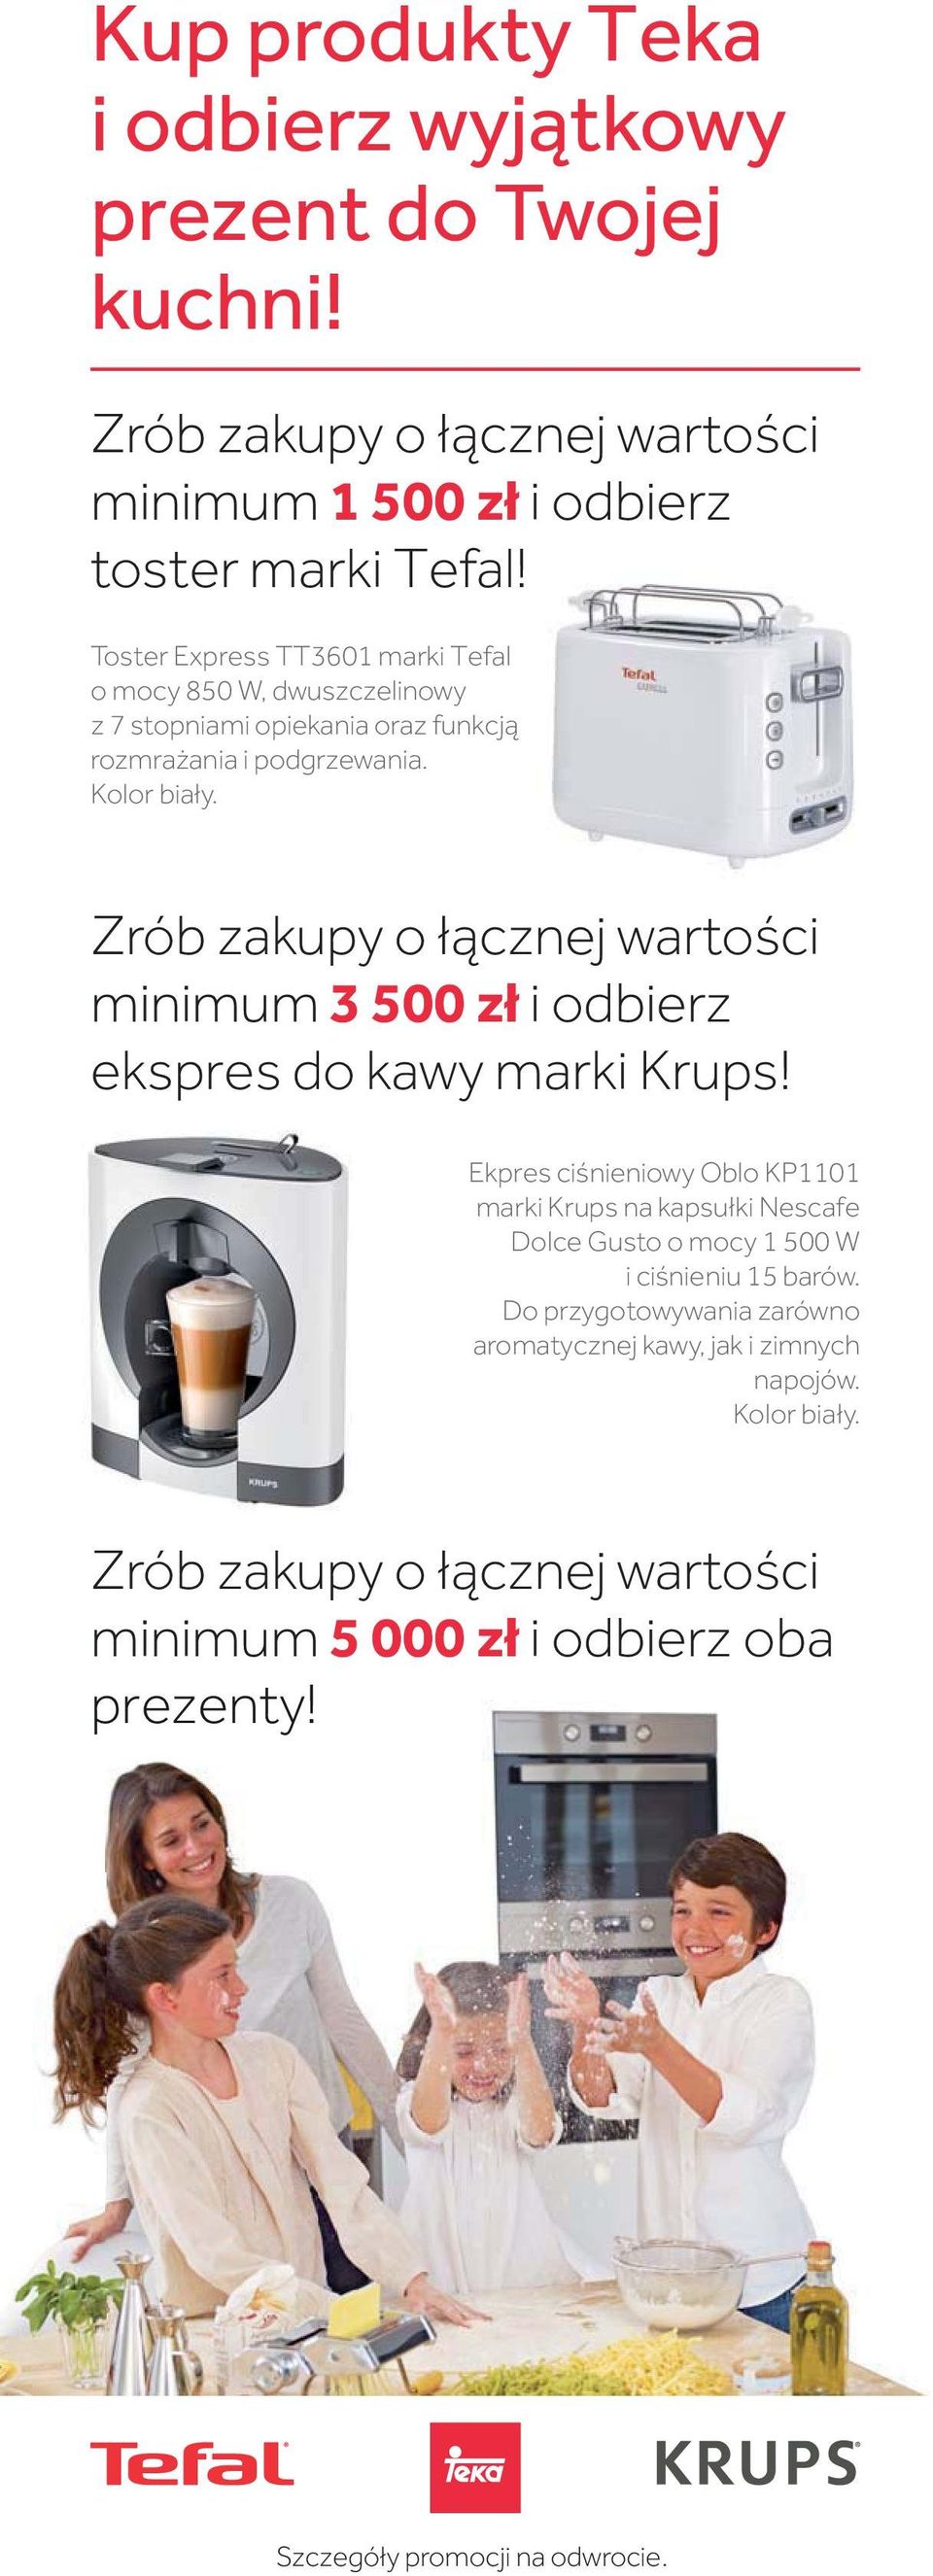 Zrób zakupy o cznej warto ci minimum 3 500 z i odbierz ekspres do kawy marki Krups!